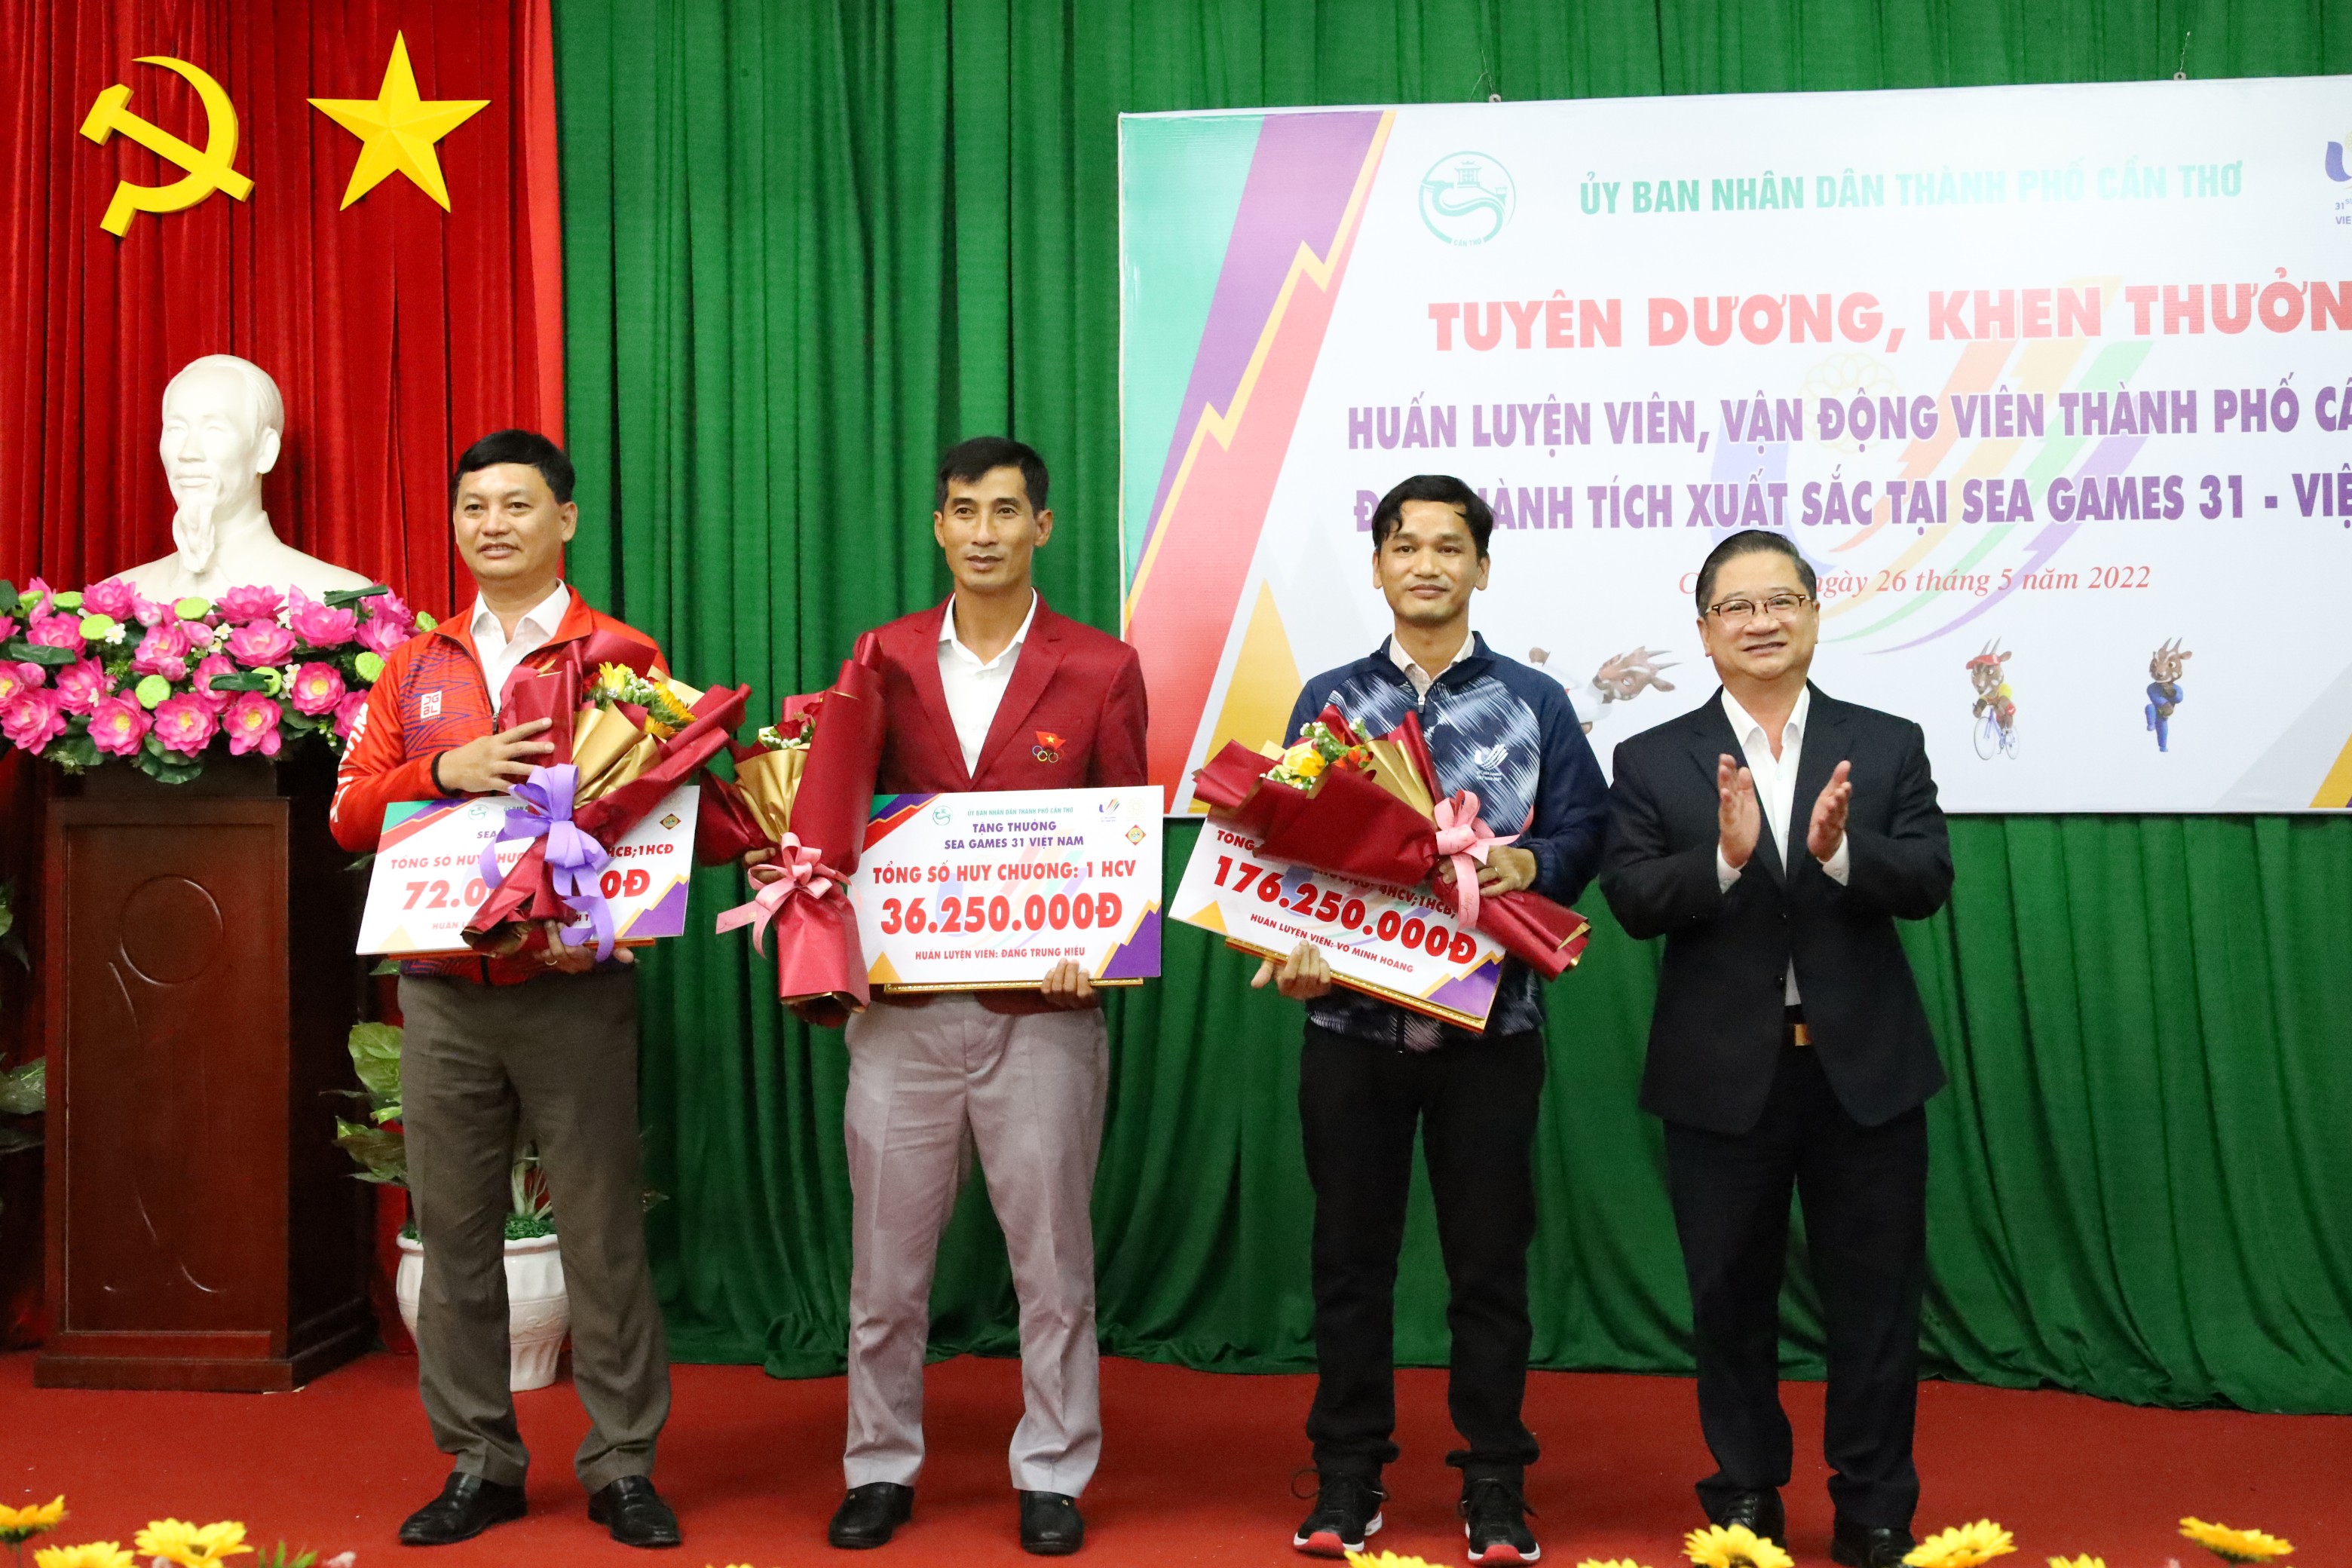 Ông Trần Việt Trường – Phó Bí thư Thành ủy, Chủ tịch UBND TP. Cần Thơ trao thưởng cho các HLV đạt thành tích xuất sắc tại SEA Games 31.